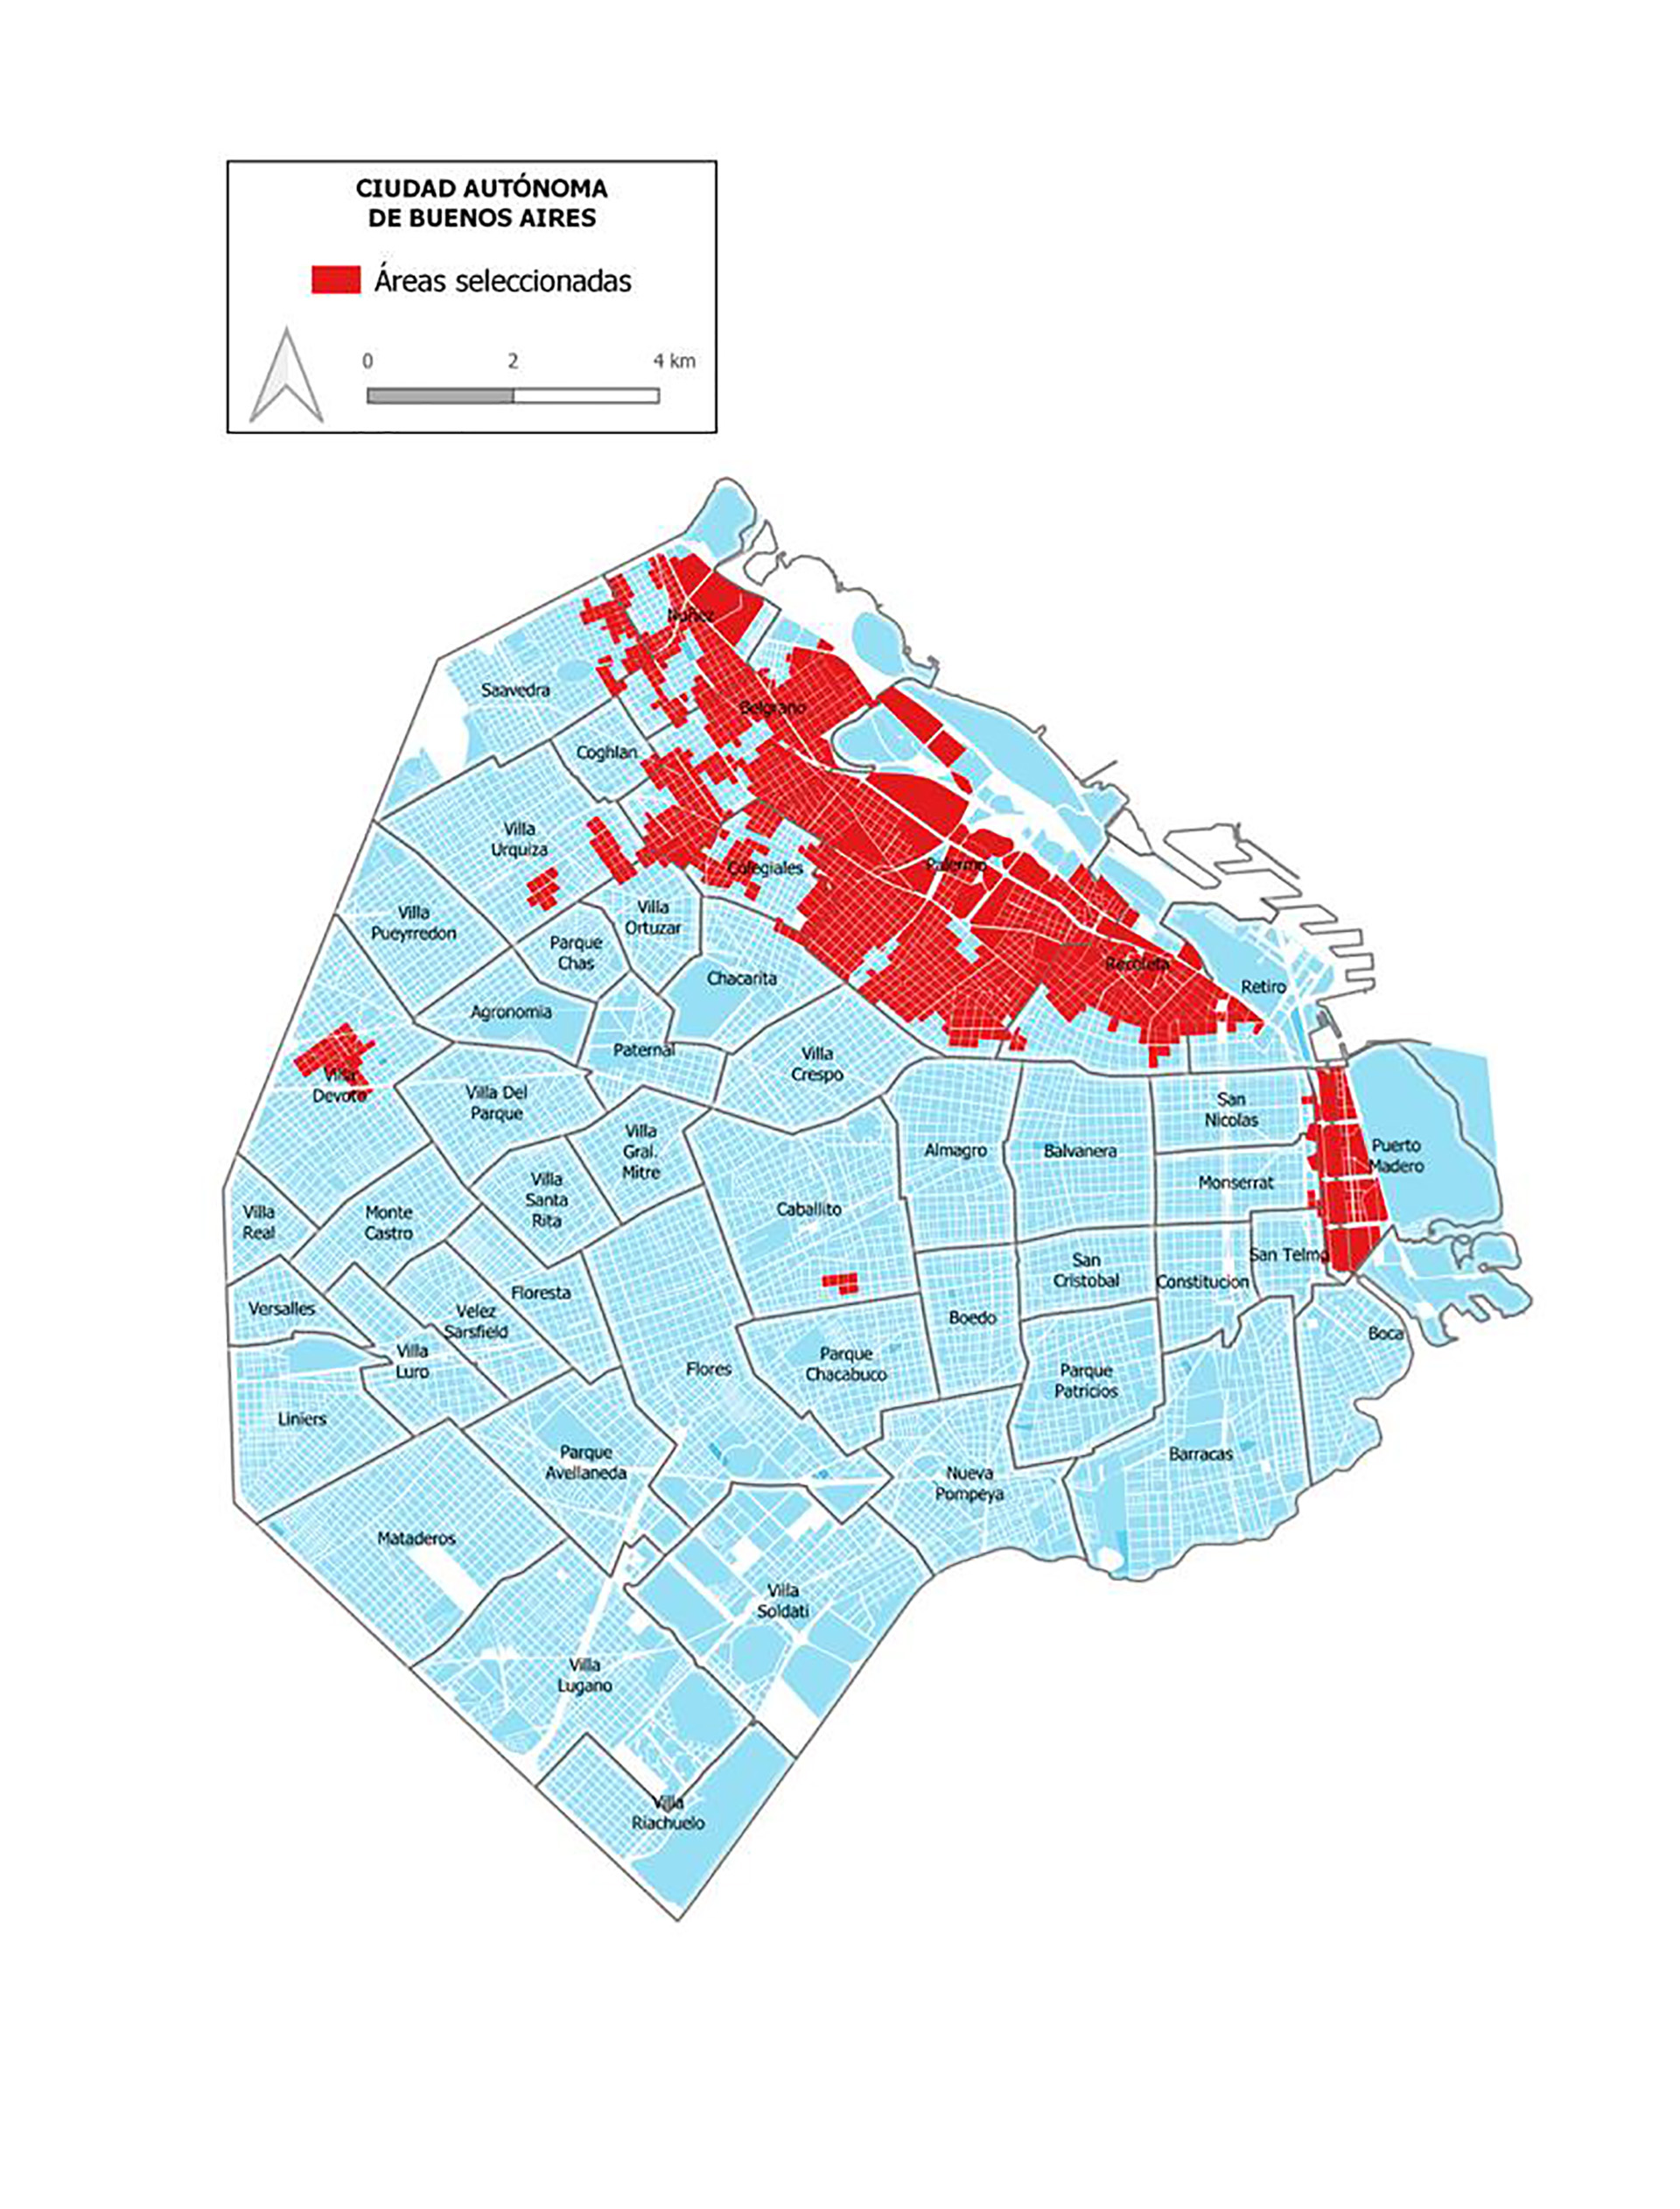 Las zonas que dejarían de recibir subsidios en la ciudad de Buenos Aires 